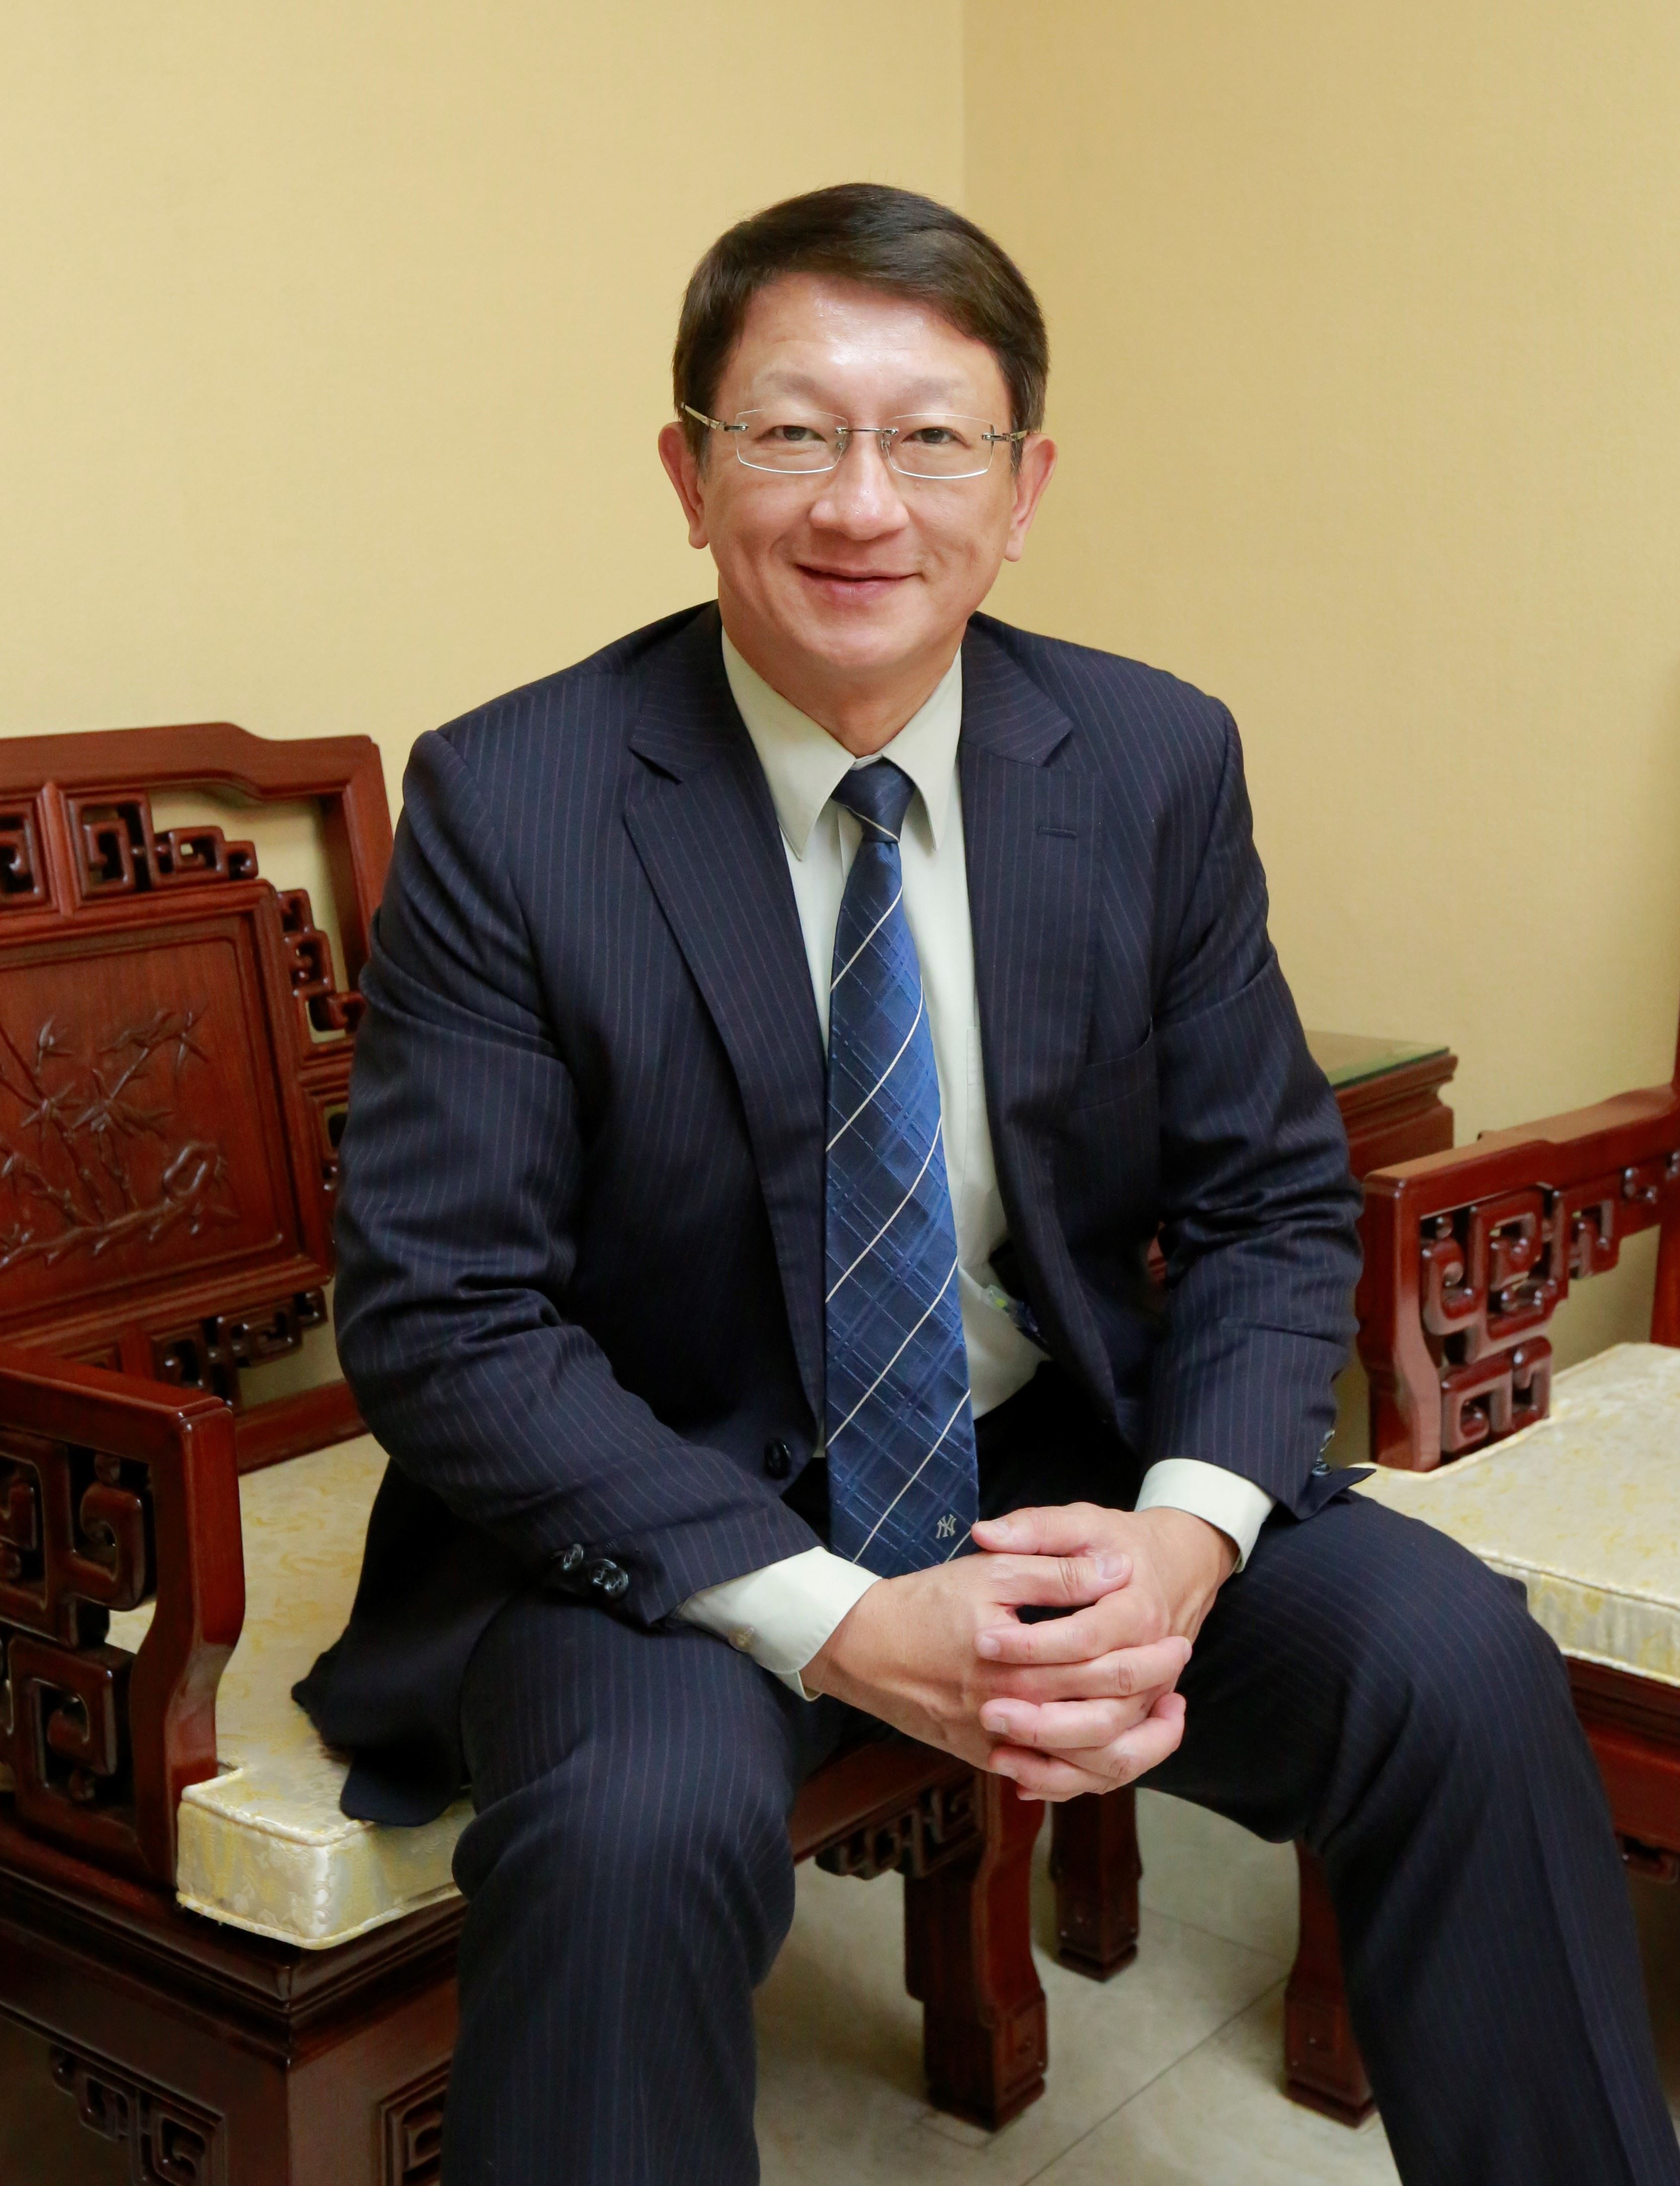 Mr. Chou, Chih-Hung Ph.D's photo